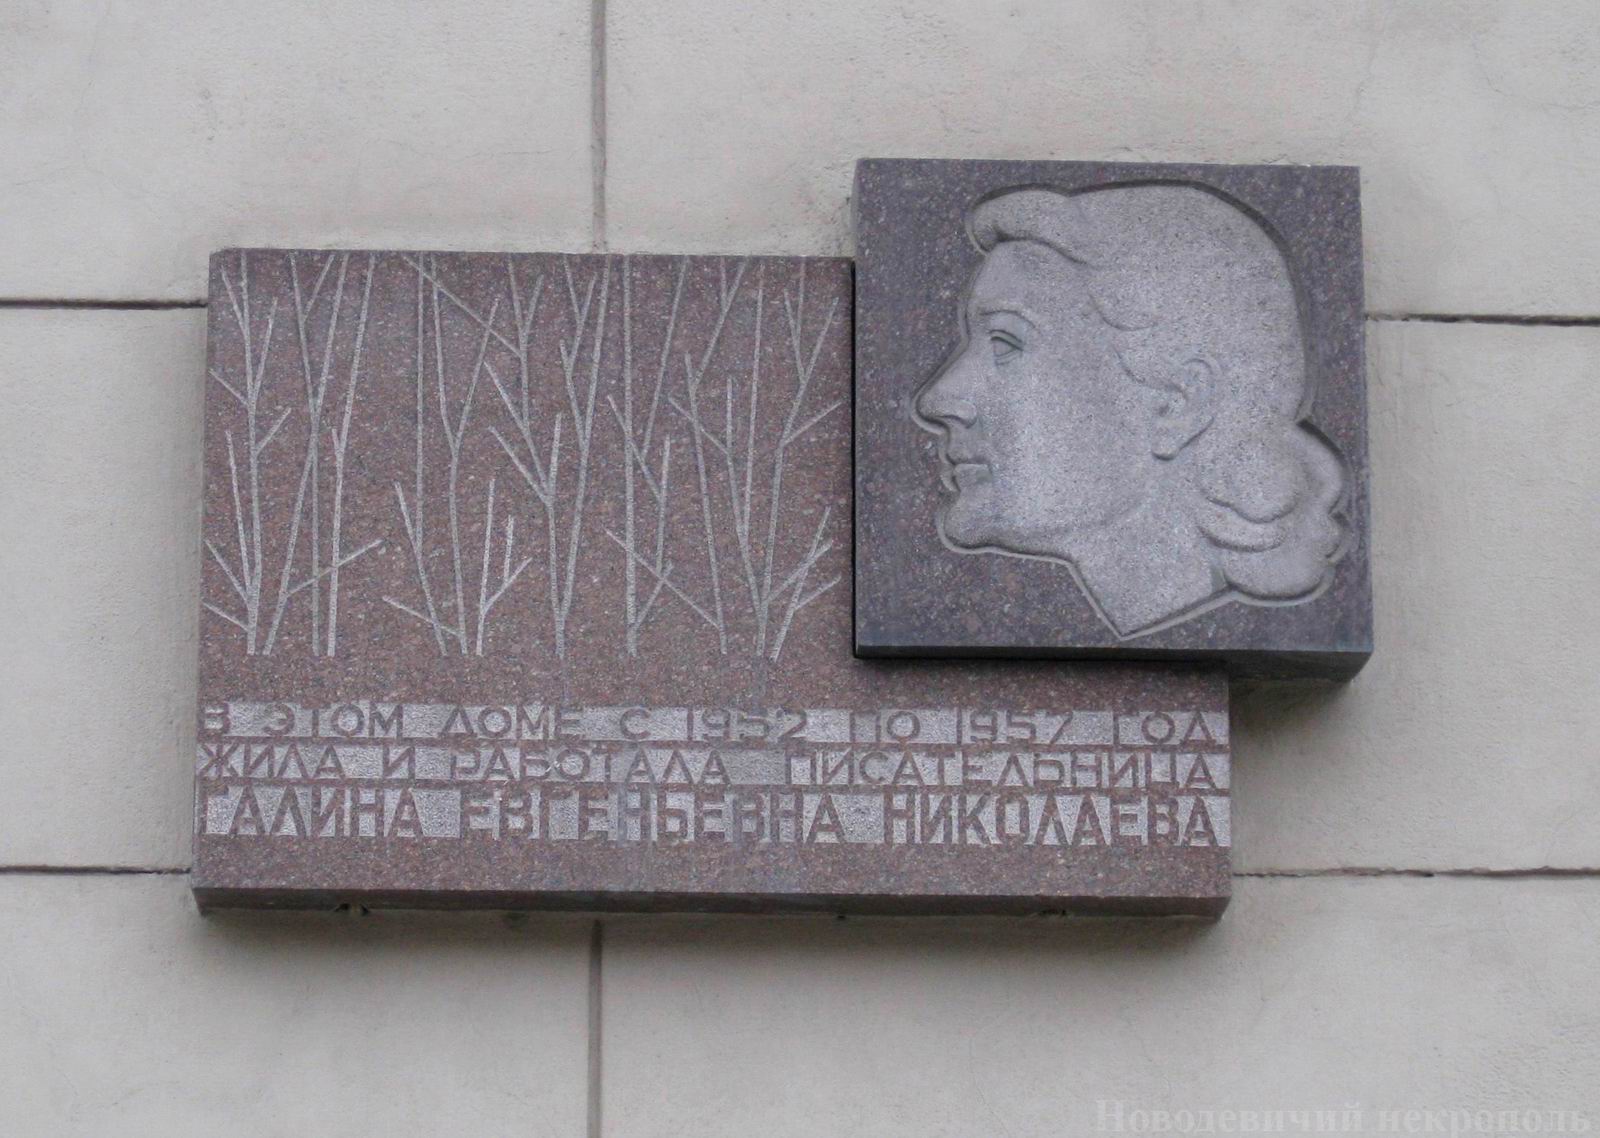 Мемориальная доска Николаевой Г.Е. (1911–1963), ск. Ю.А.Тур, на Новослободской улице, дом 54/56, открыта 16.10.1973.